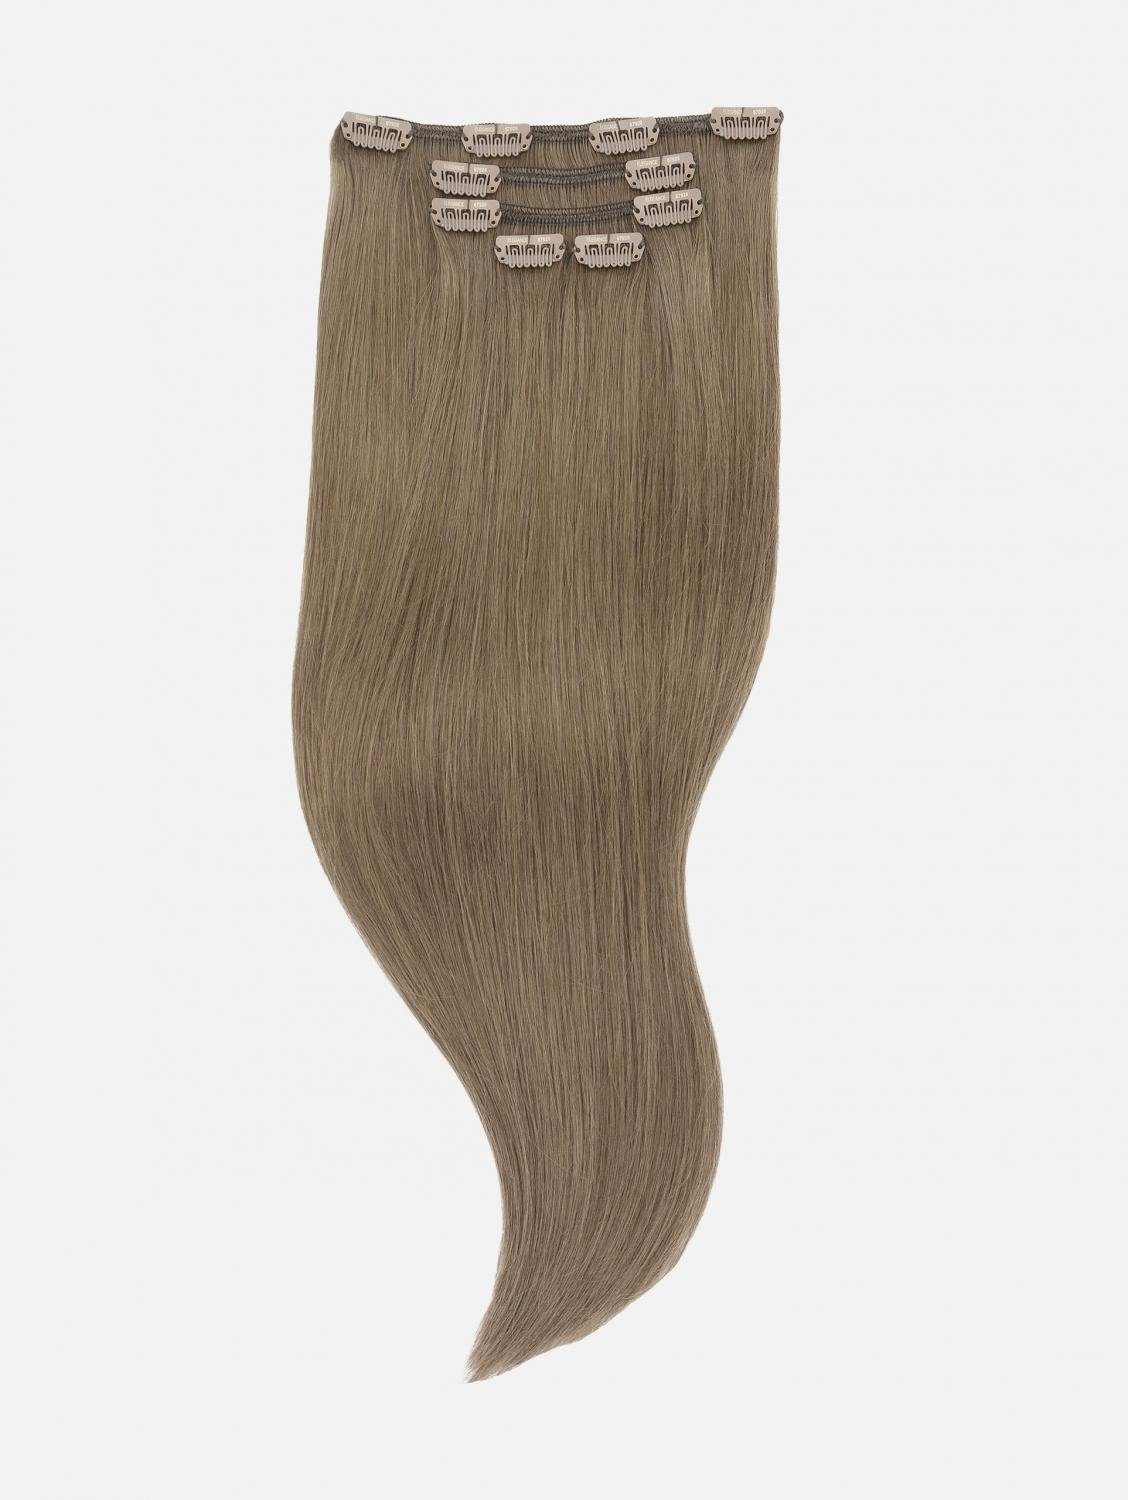 EH - Haarverlängerung (Cool - Echthaar Seidenglatt NATURAL Extensions 5-teilig Echthaar 40cm, #7 Echthaar-Extension 50cm, Brown) Clip-In